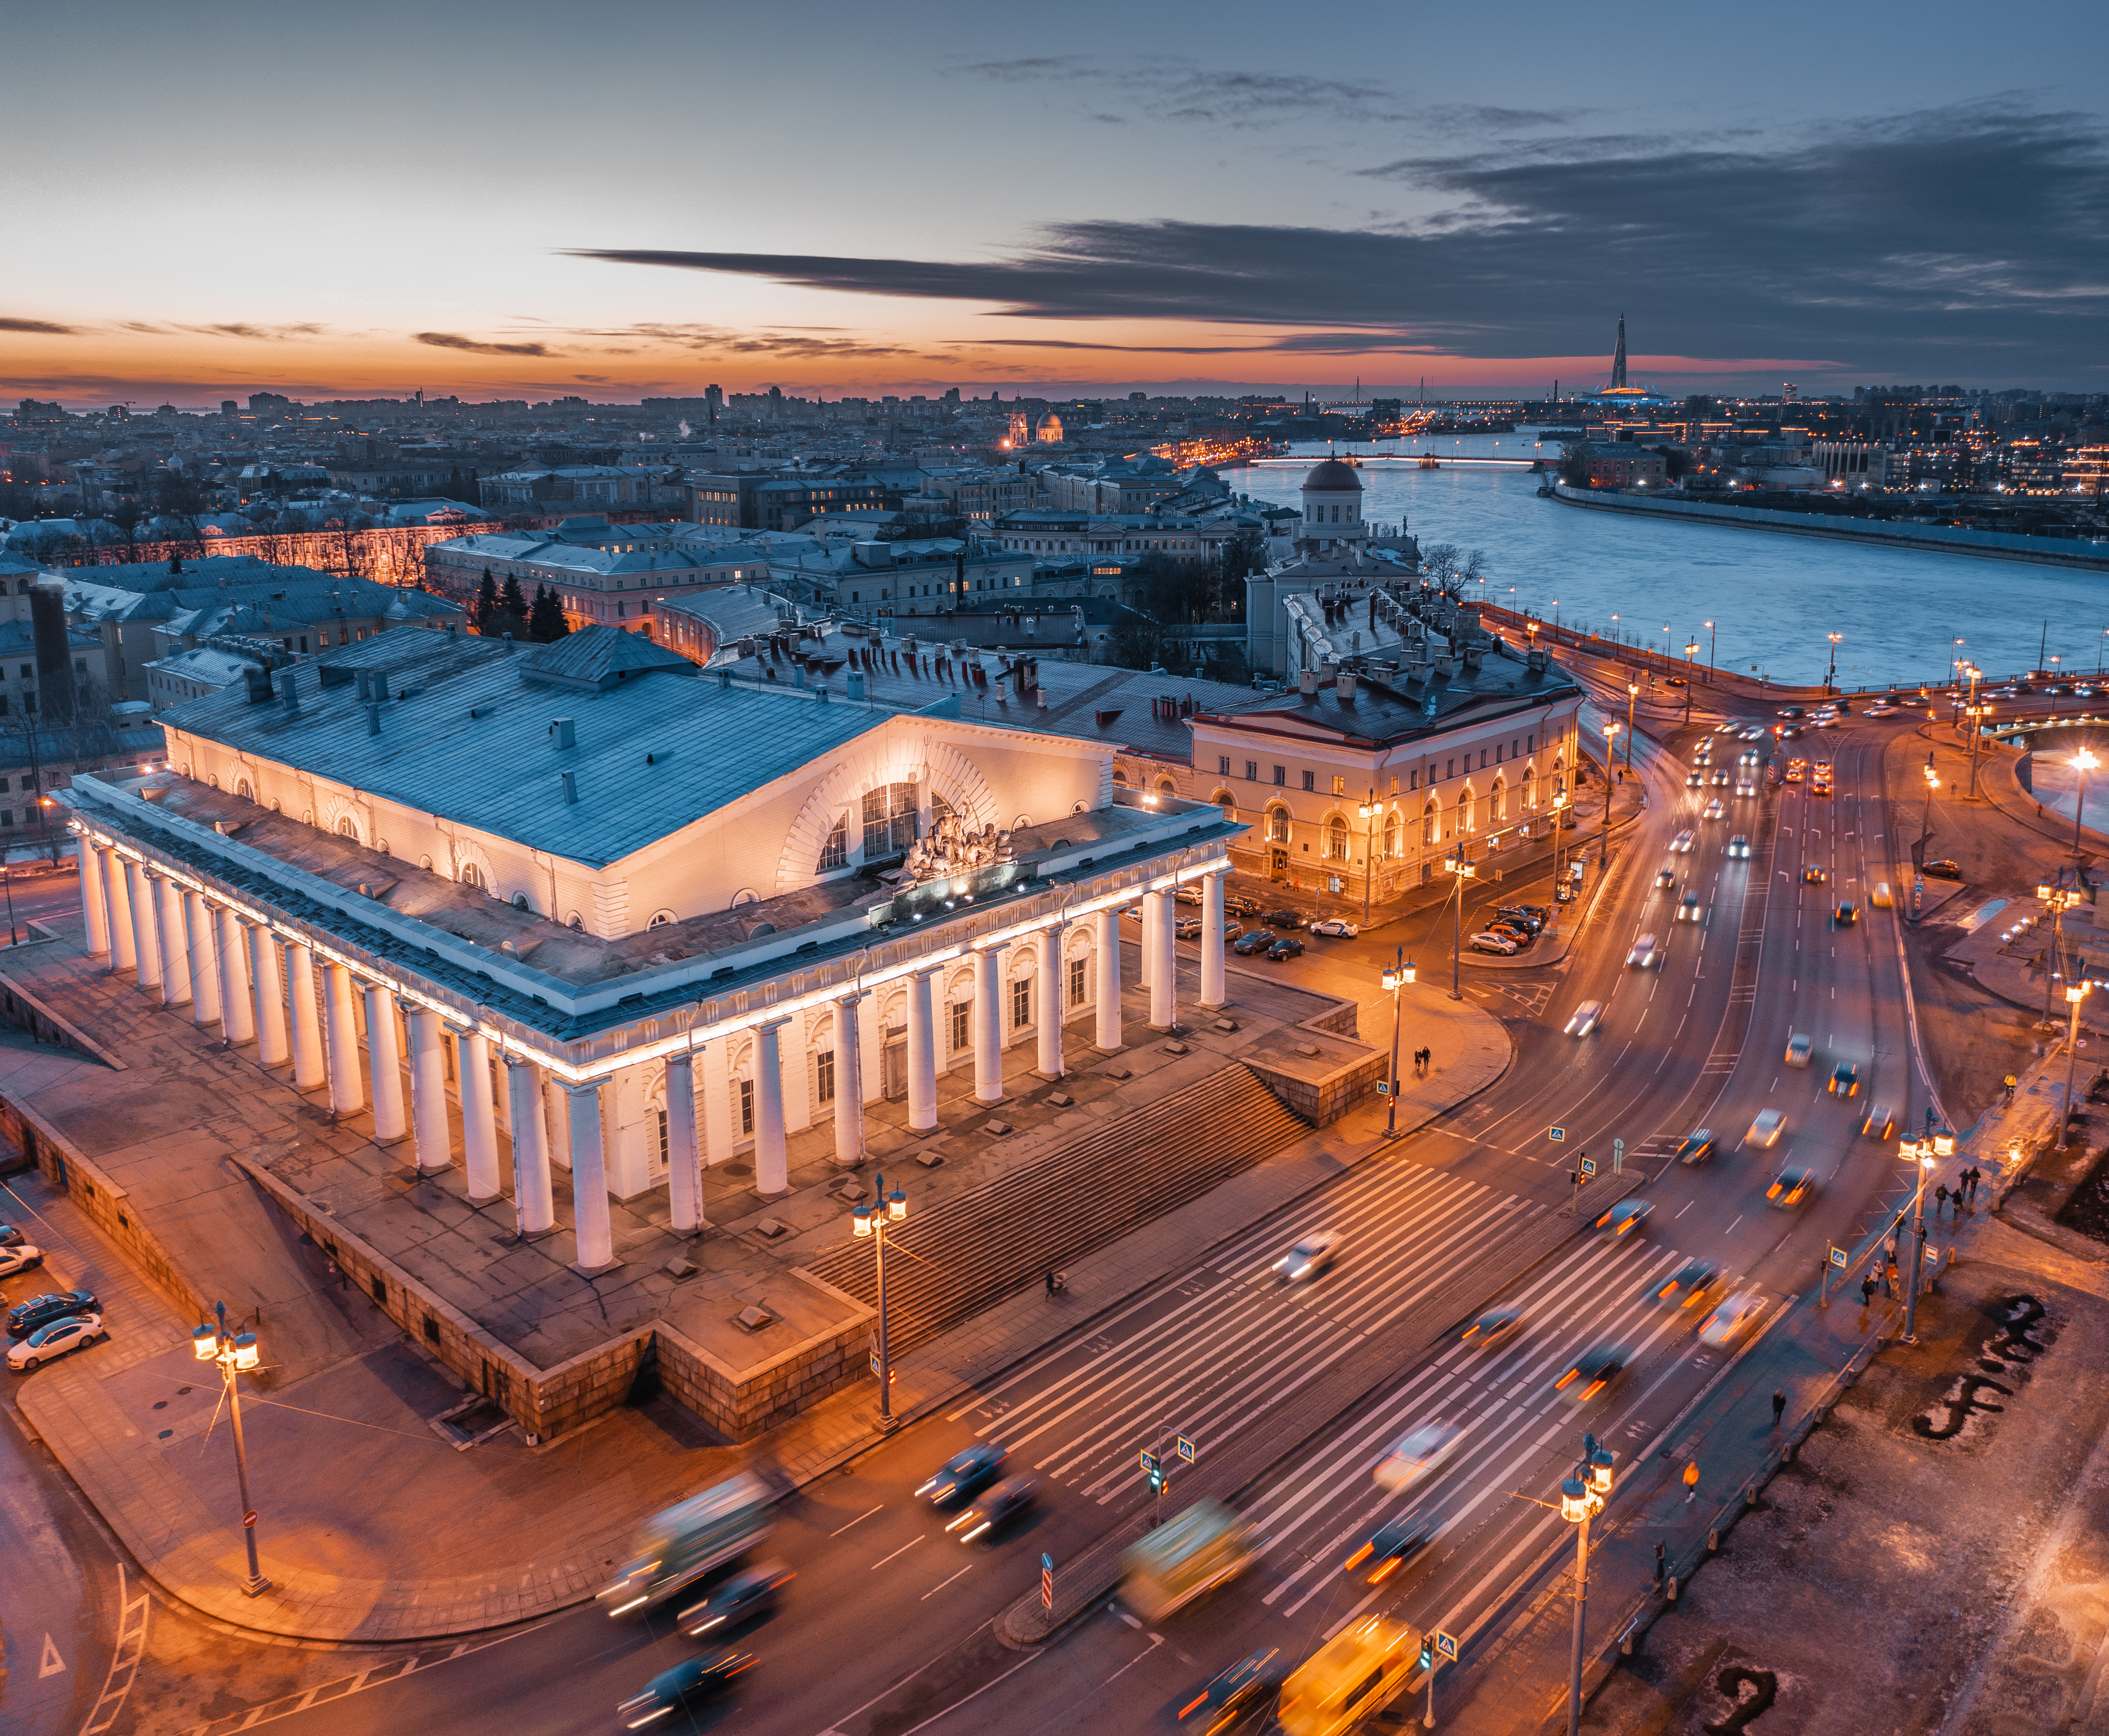 Санкт‑Петербург станет более доступным для туристов из Объединенных Арабских Эмиратов и других стран